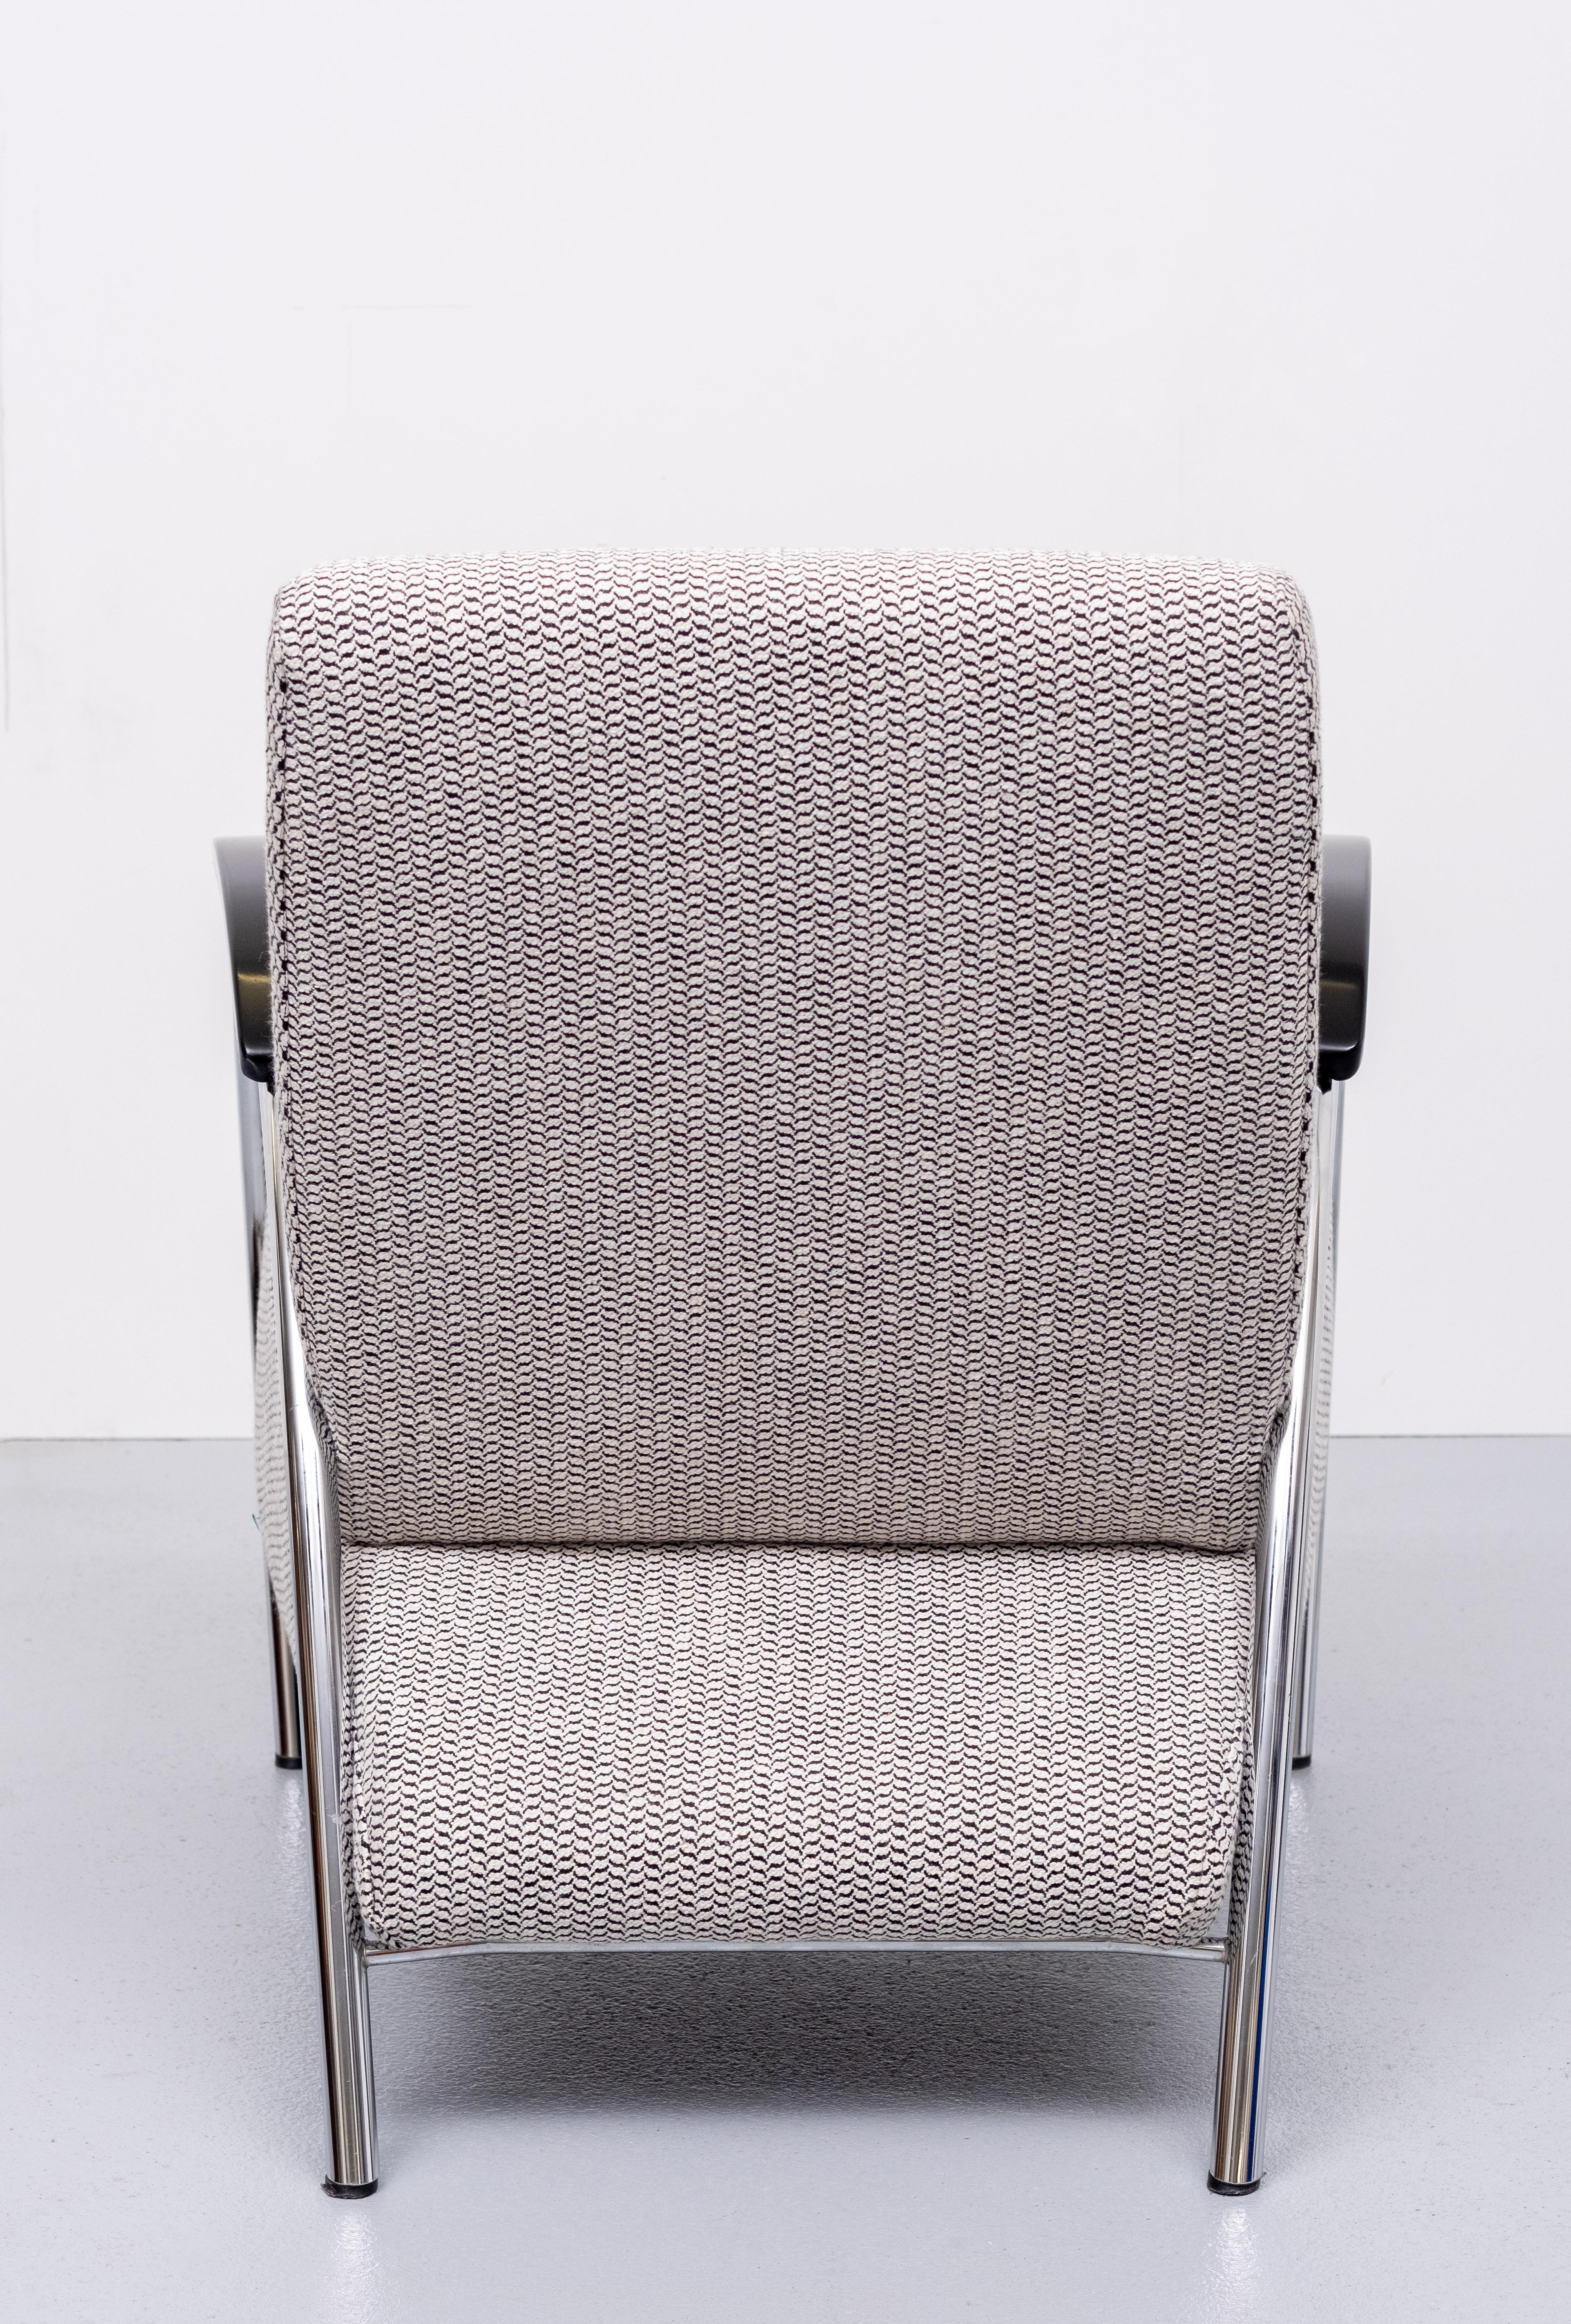 Modern Gelderland Lounge Chair Model 5775 by Jan des Bouvrie, 1980s